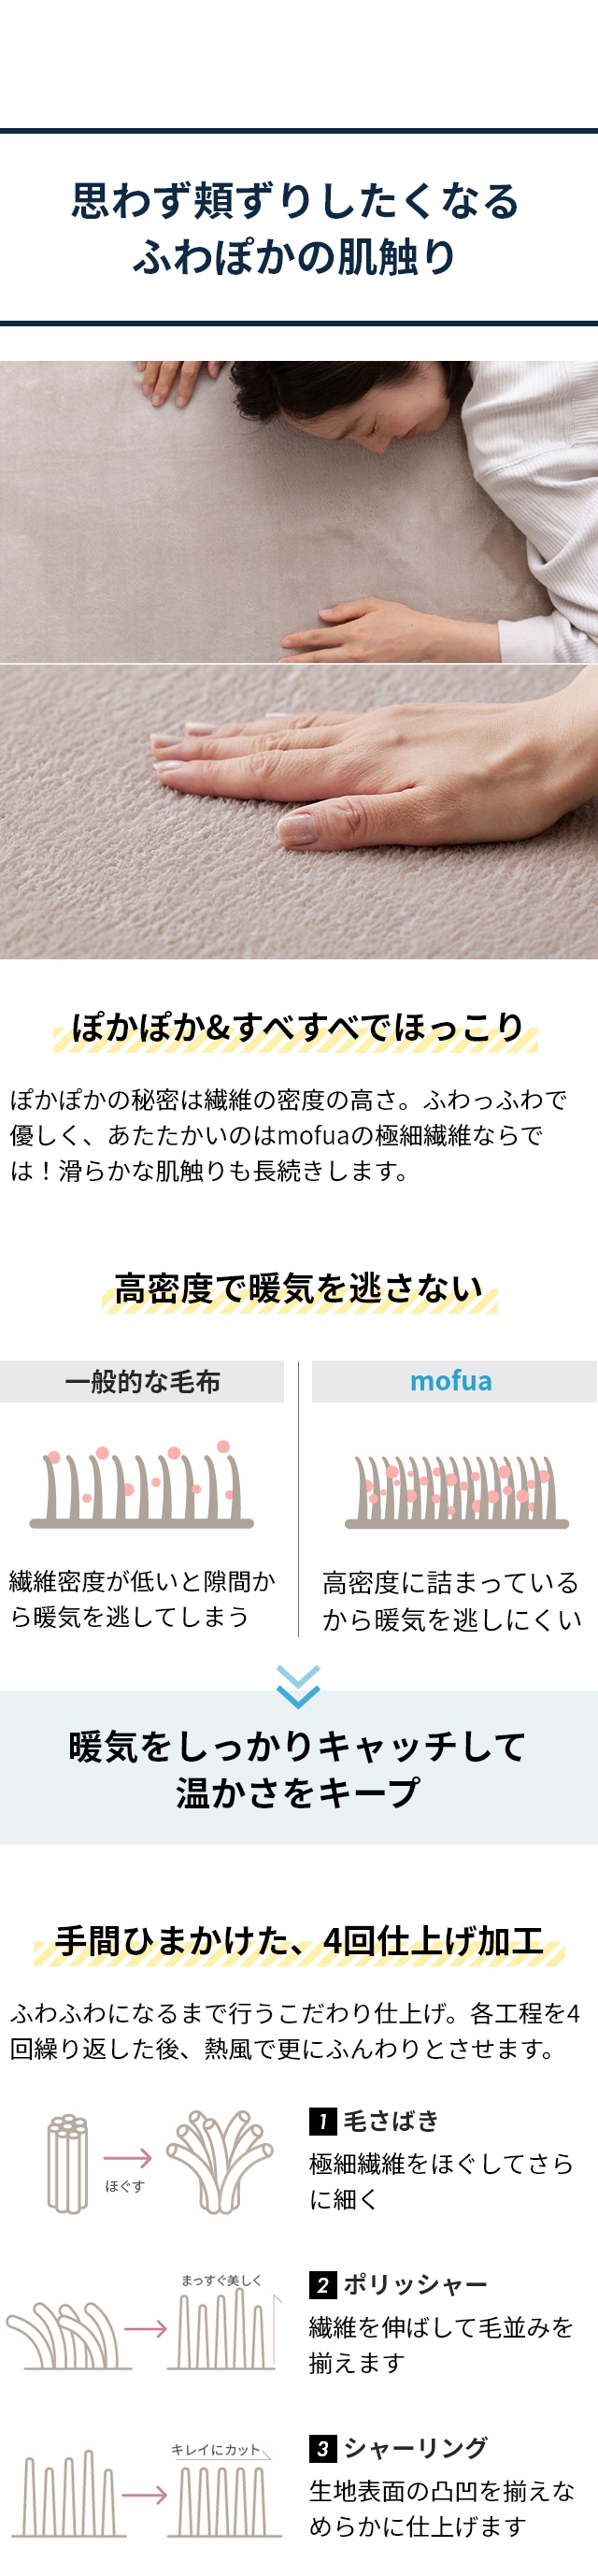 mofua (モフア) プレミアムマイクロファイバー あったかサイドまでしっかり防水ボックスシーツ SD セミダブル